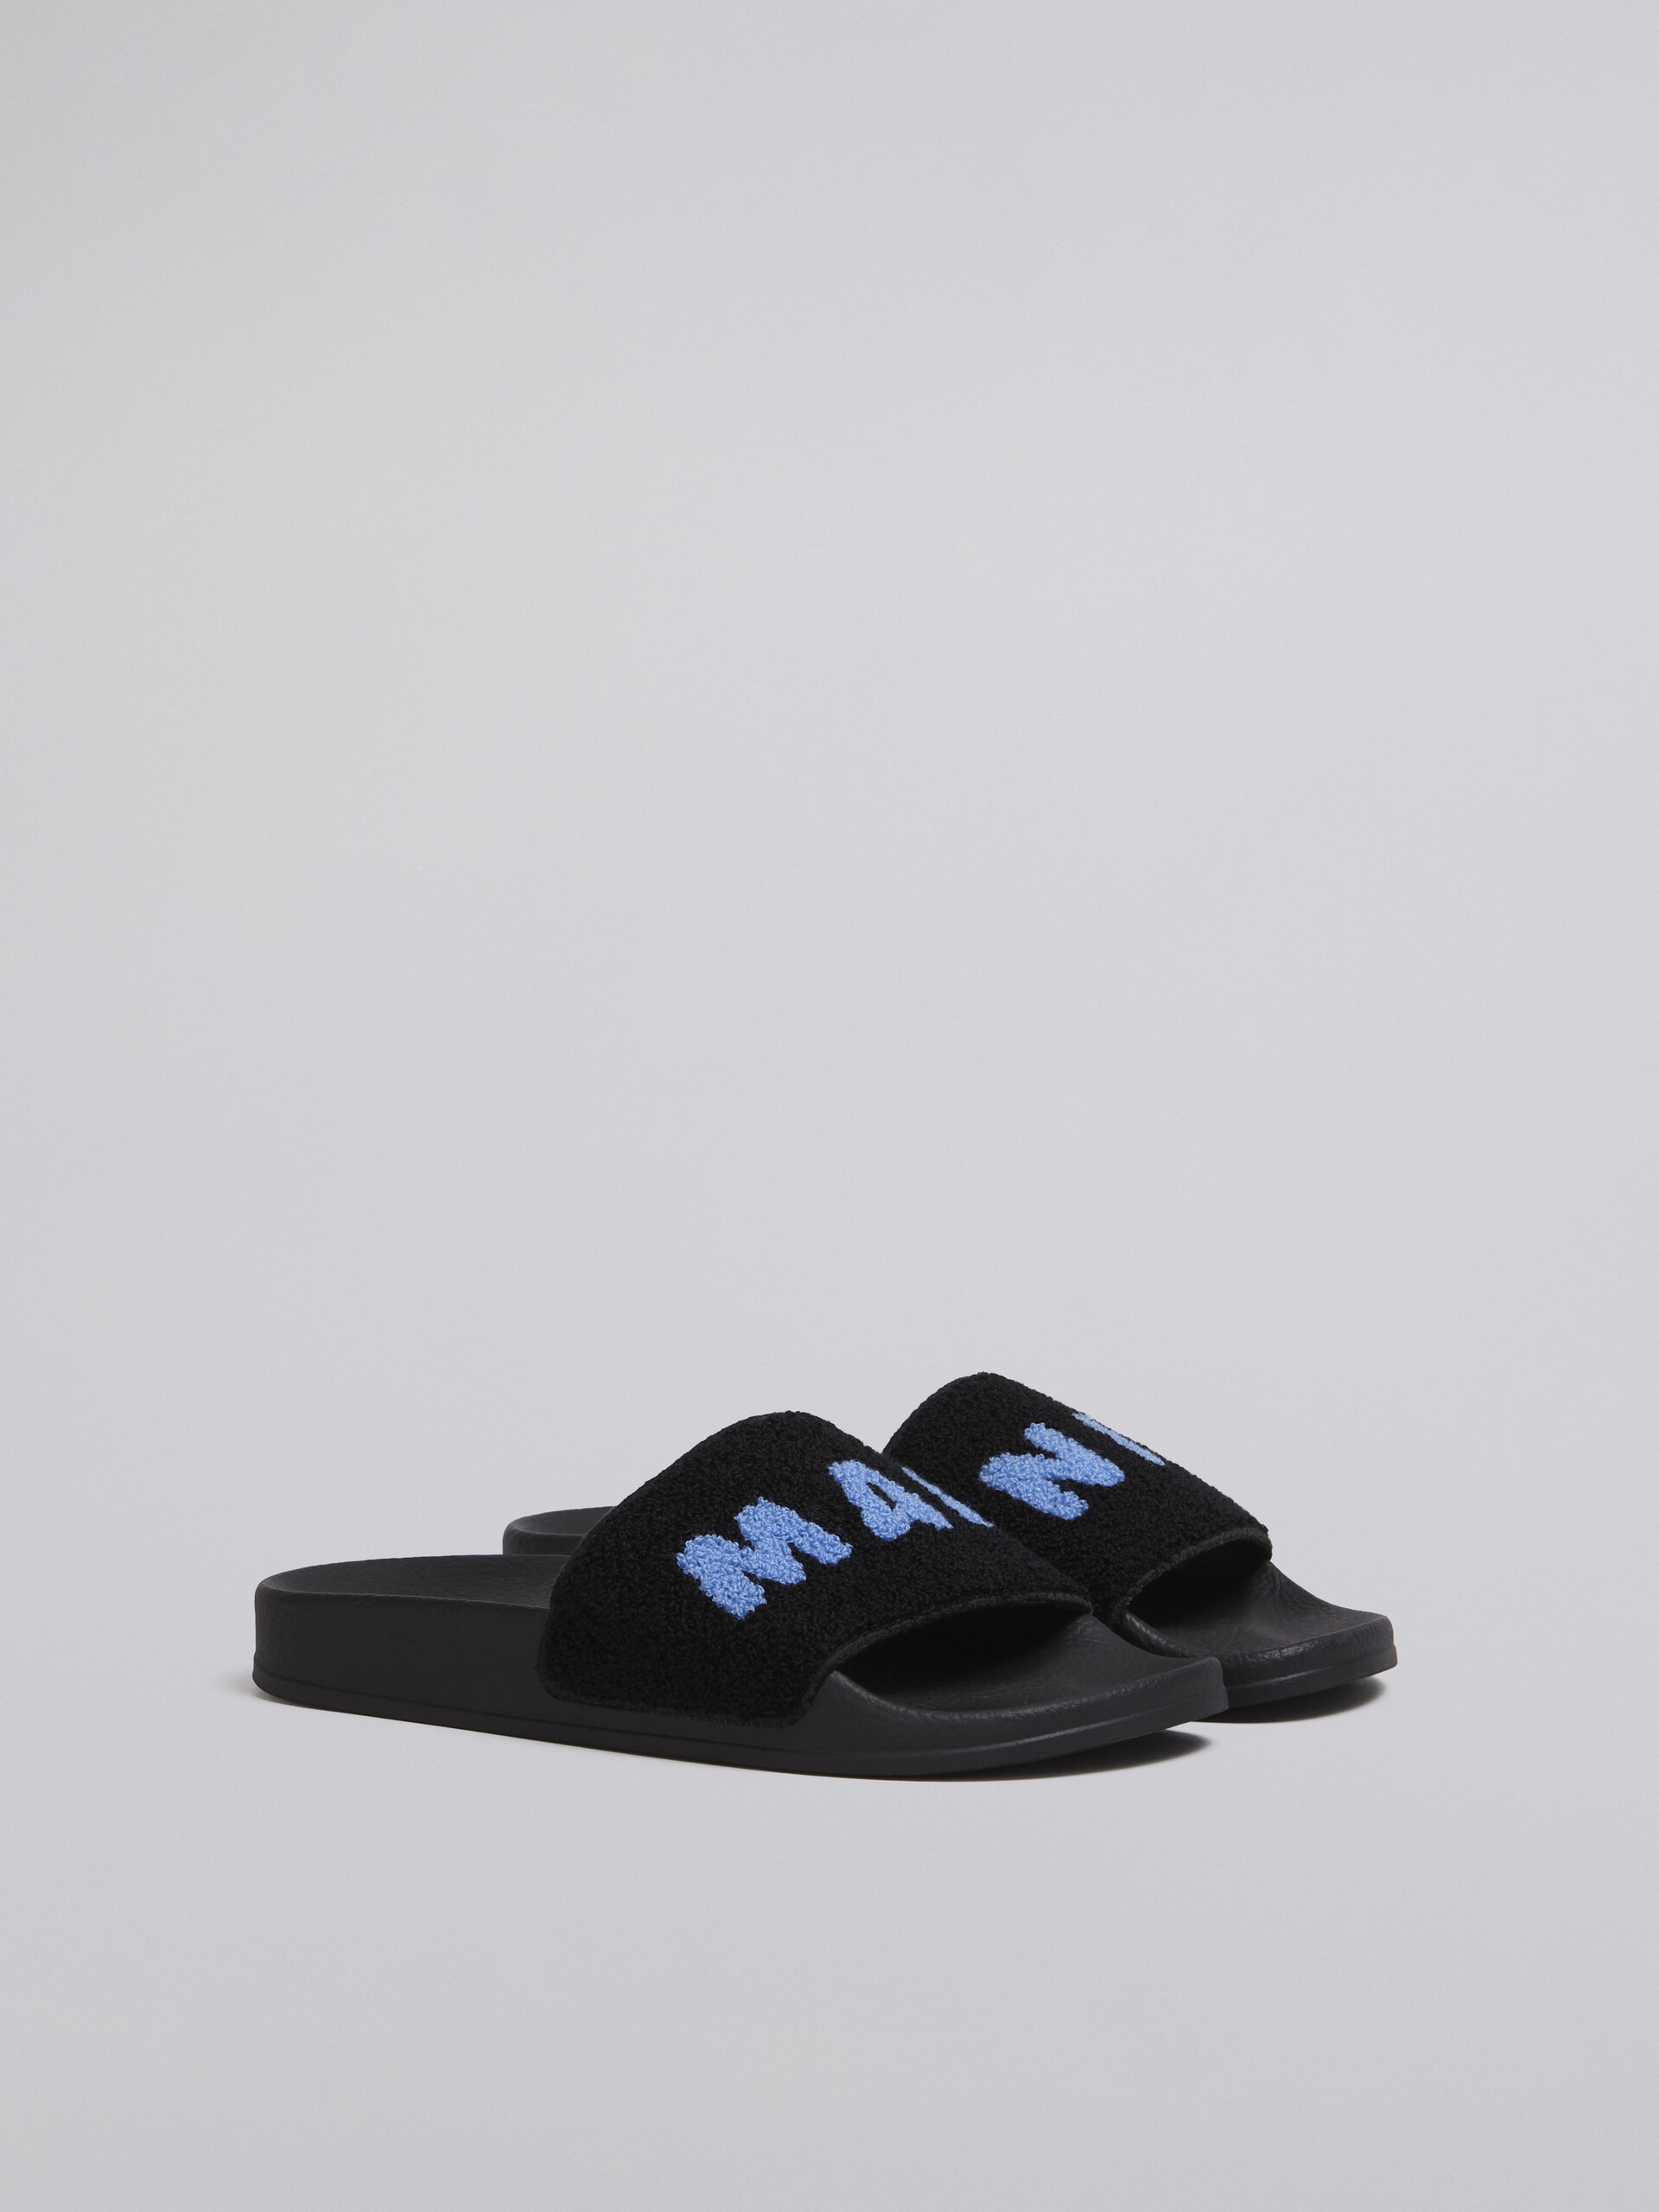 Sandalo in gomma con fascia in spugna nero e blu - Sandali - Image 2